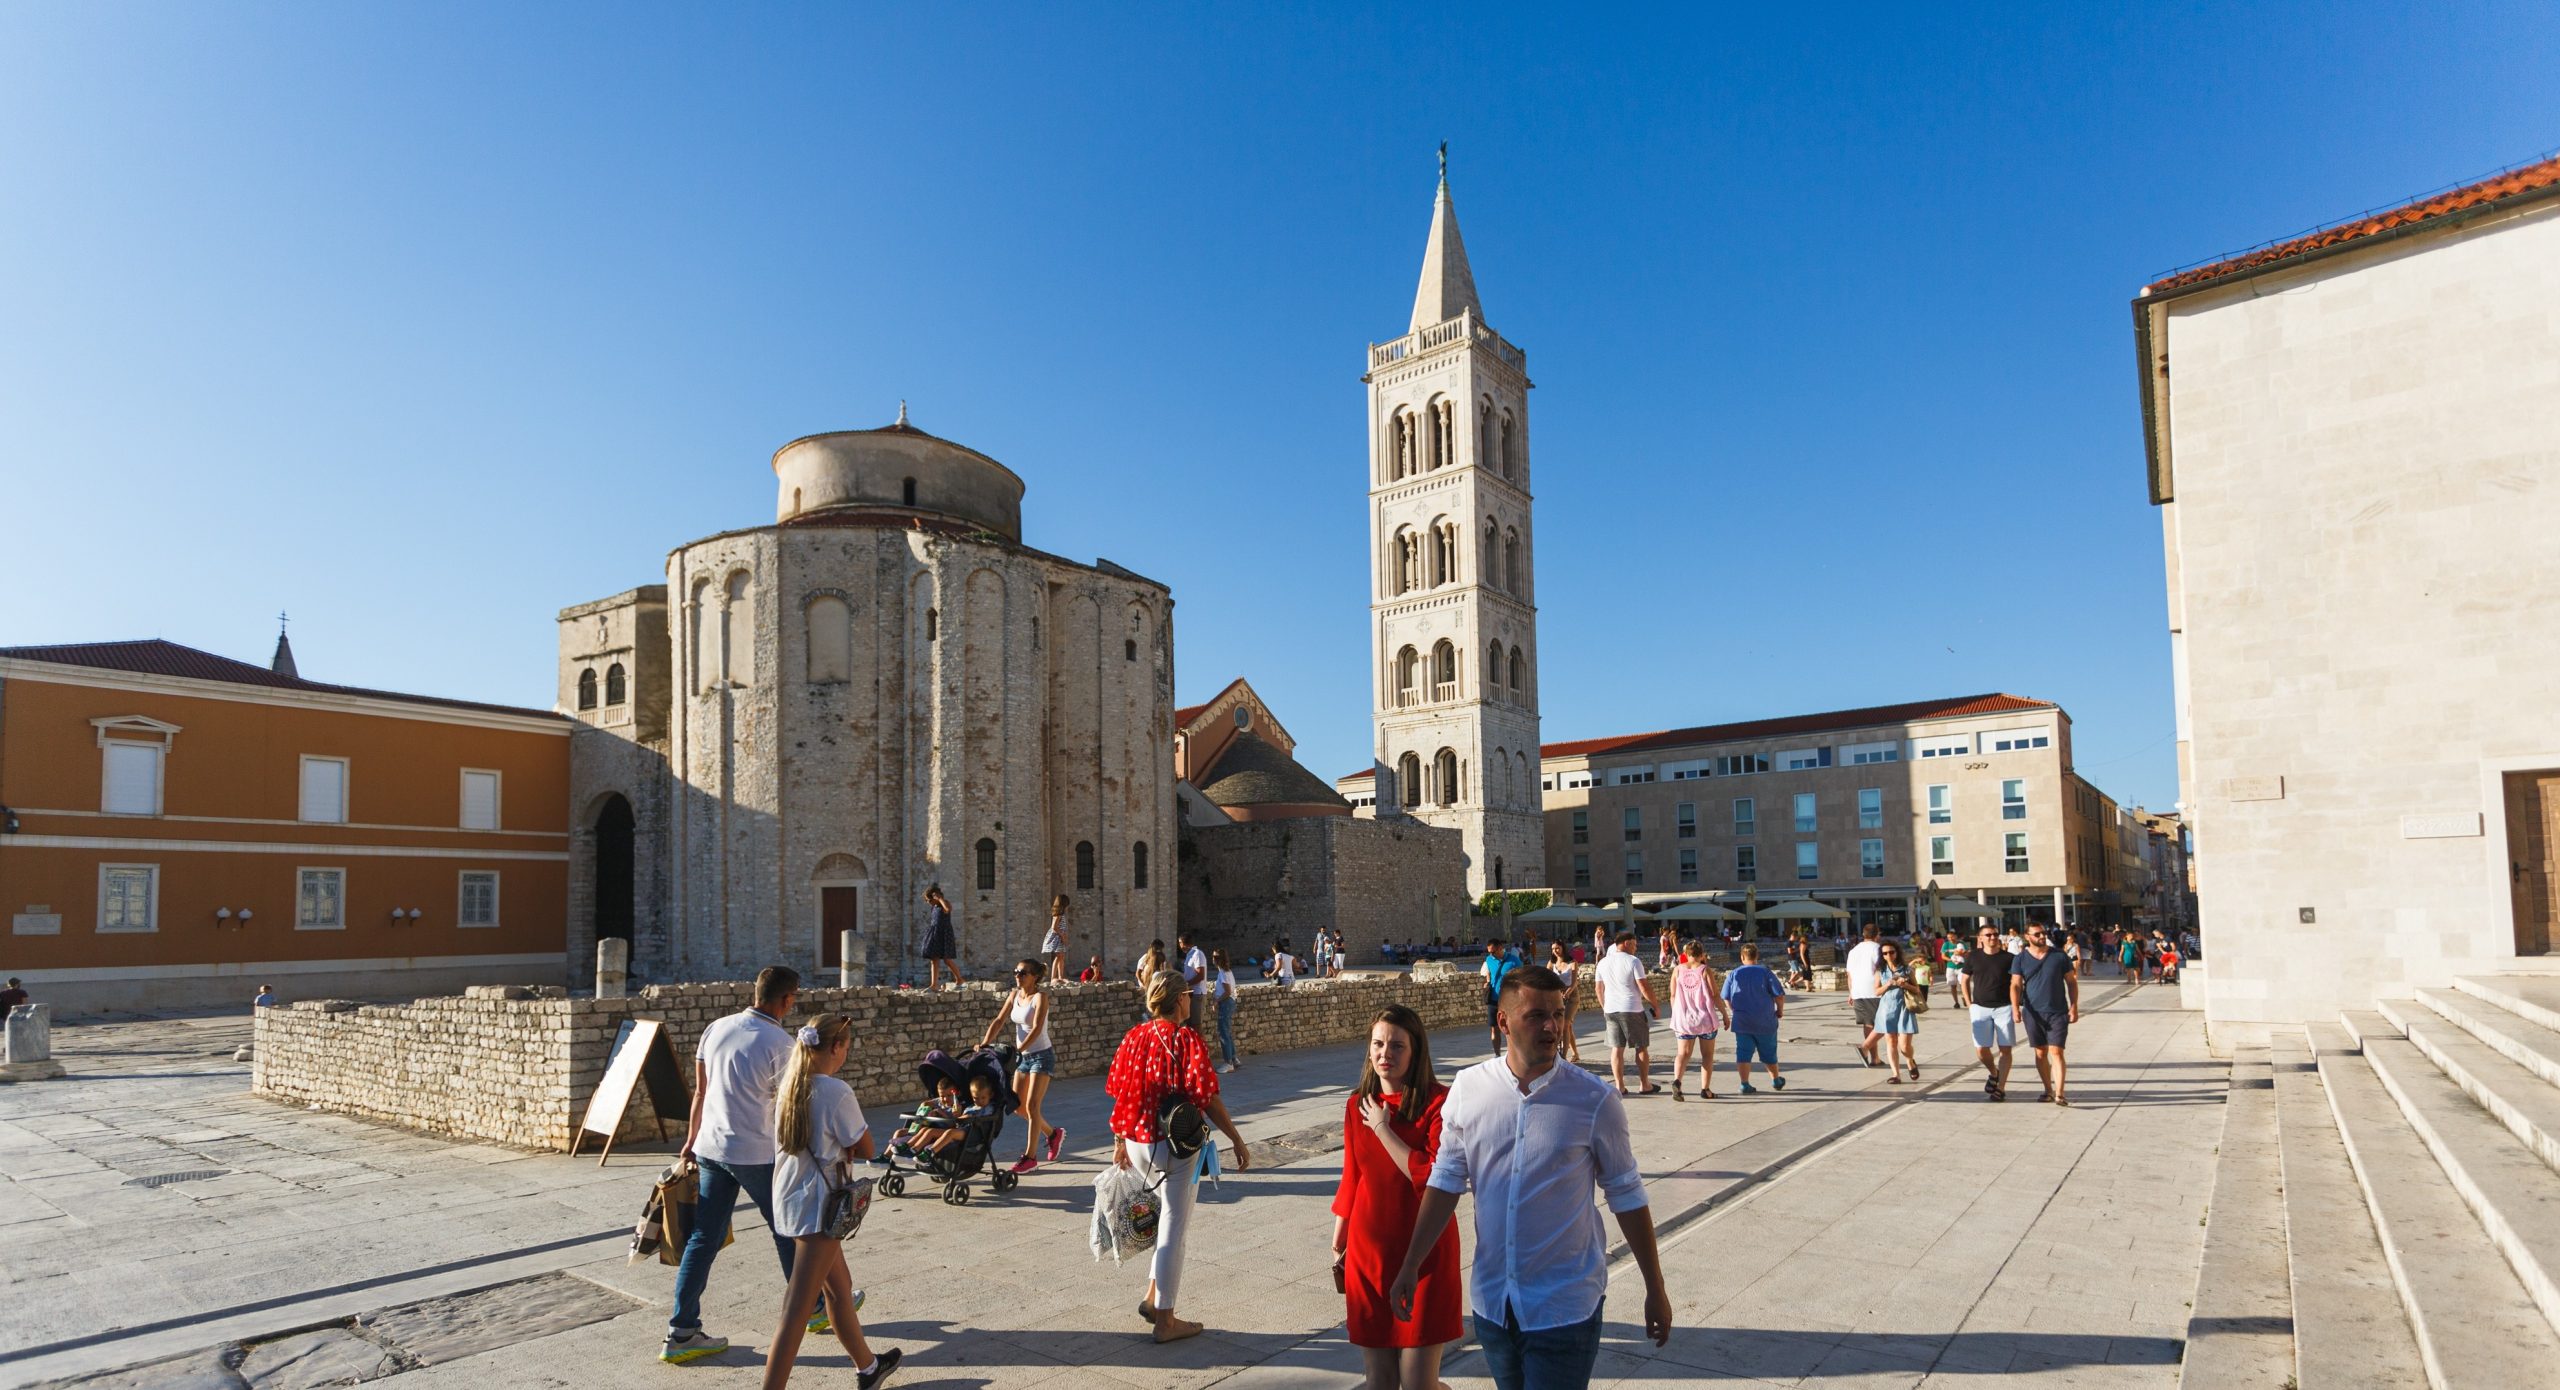 07.07.2020 Zadar - Sezona u Zadru poprima oblike proslogodisnje tursiticke sezone. Photo: Marko Dimic/PIXSELL